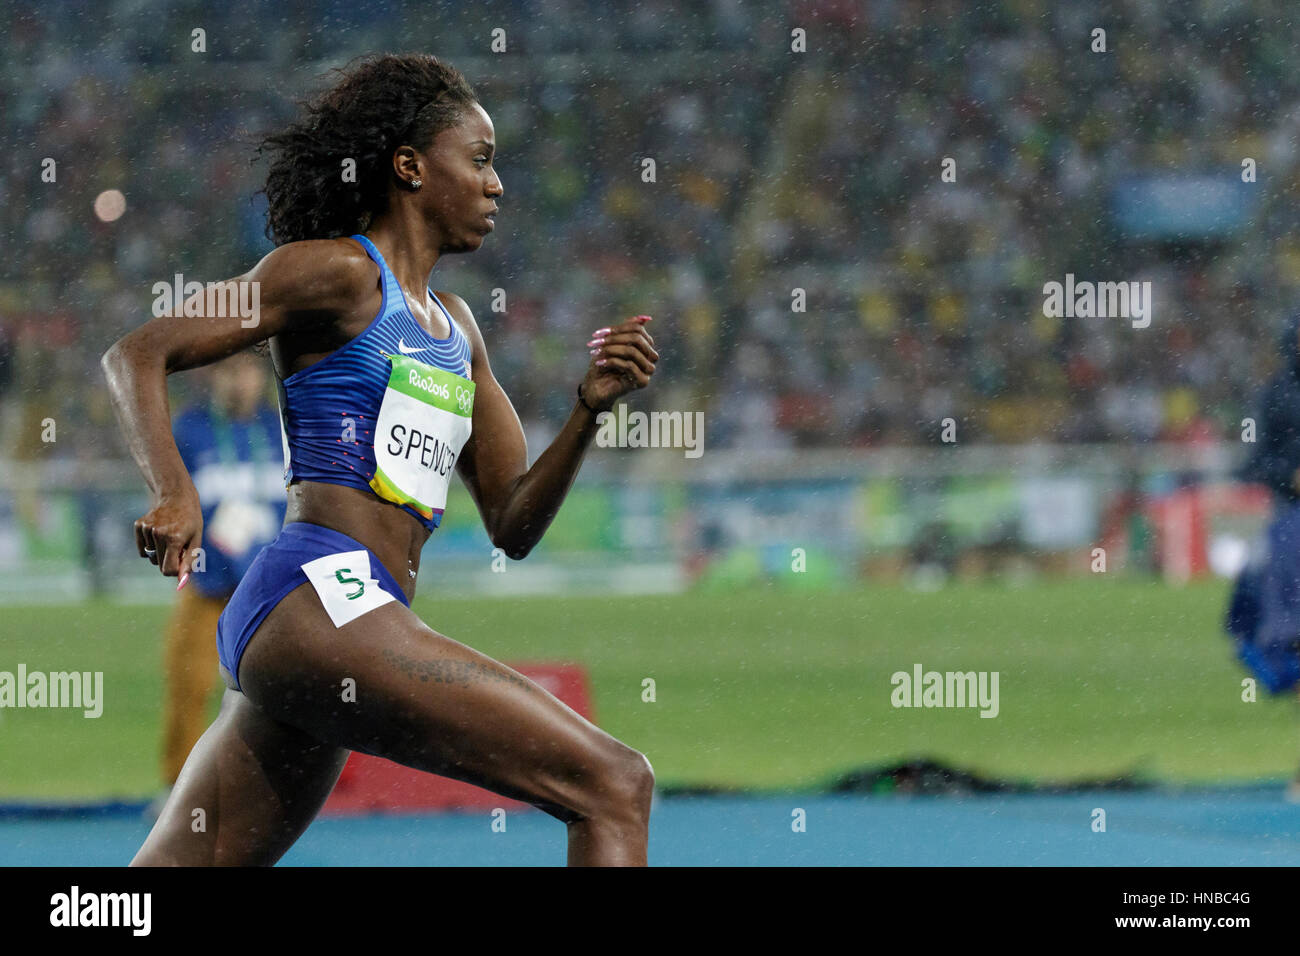 Rio De Janeiro, Brasilien. 18. August 2016.  Leichtathletik, Ashley Spencer (USA) im Wettbewerb der Frauen 400m Hürden Finale bei den Olympischen Sommerspielen 2016 Stockfoto